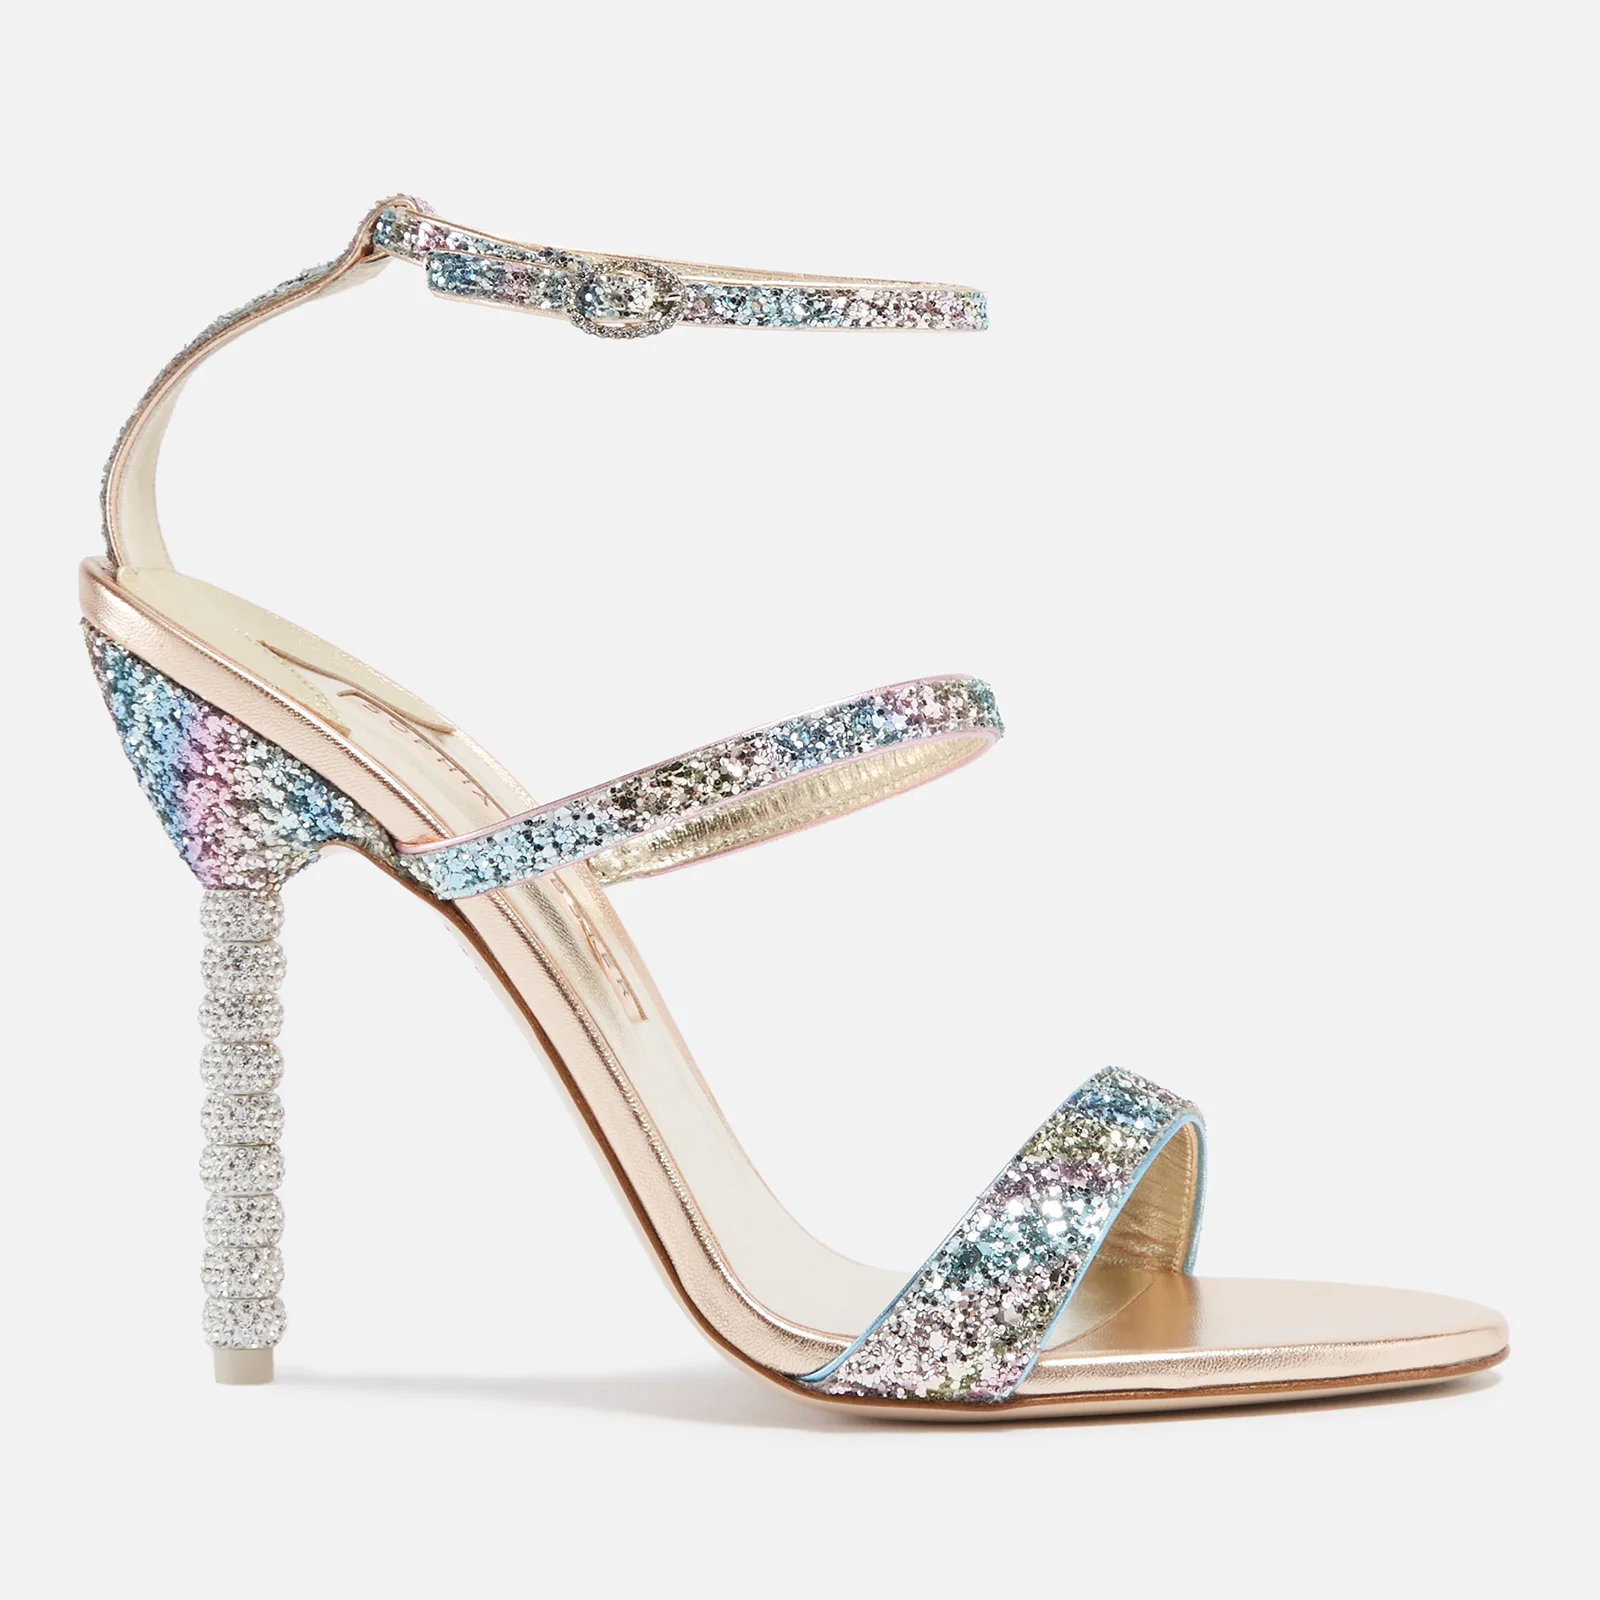 Sophia Webster Rosalind Crystal-Embellished Leather Heeled Sandals Image 1